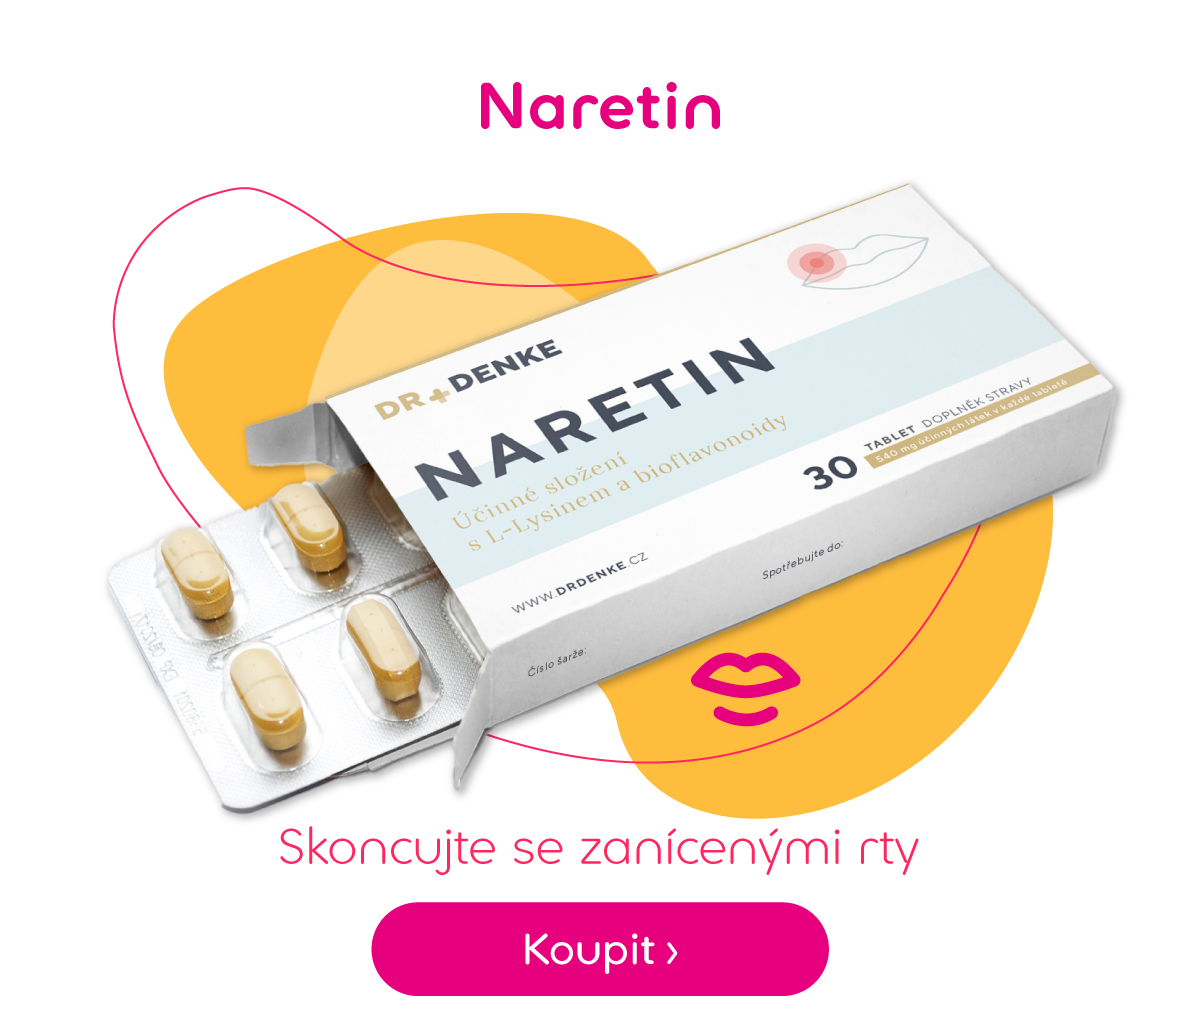 Naretin